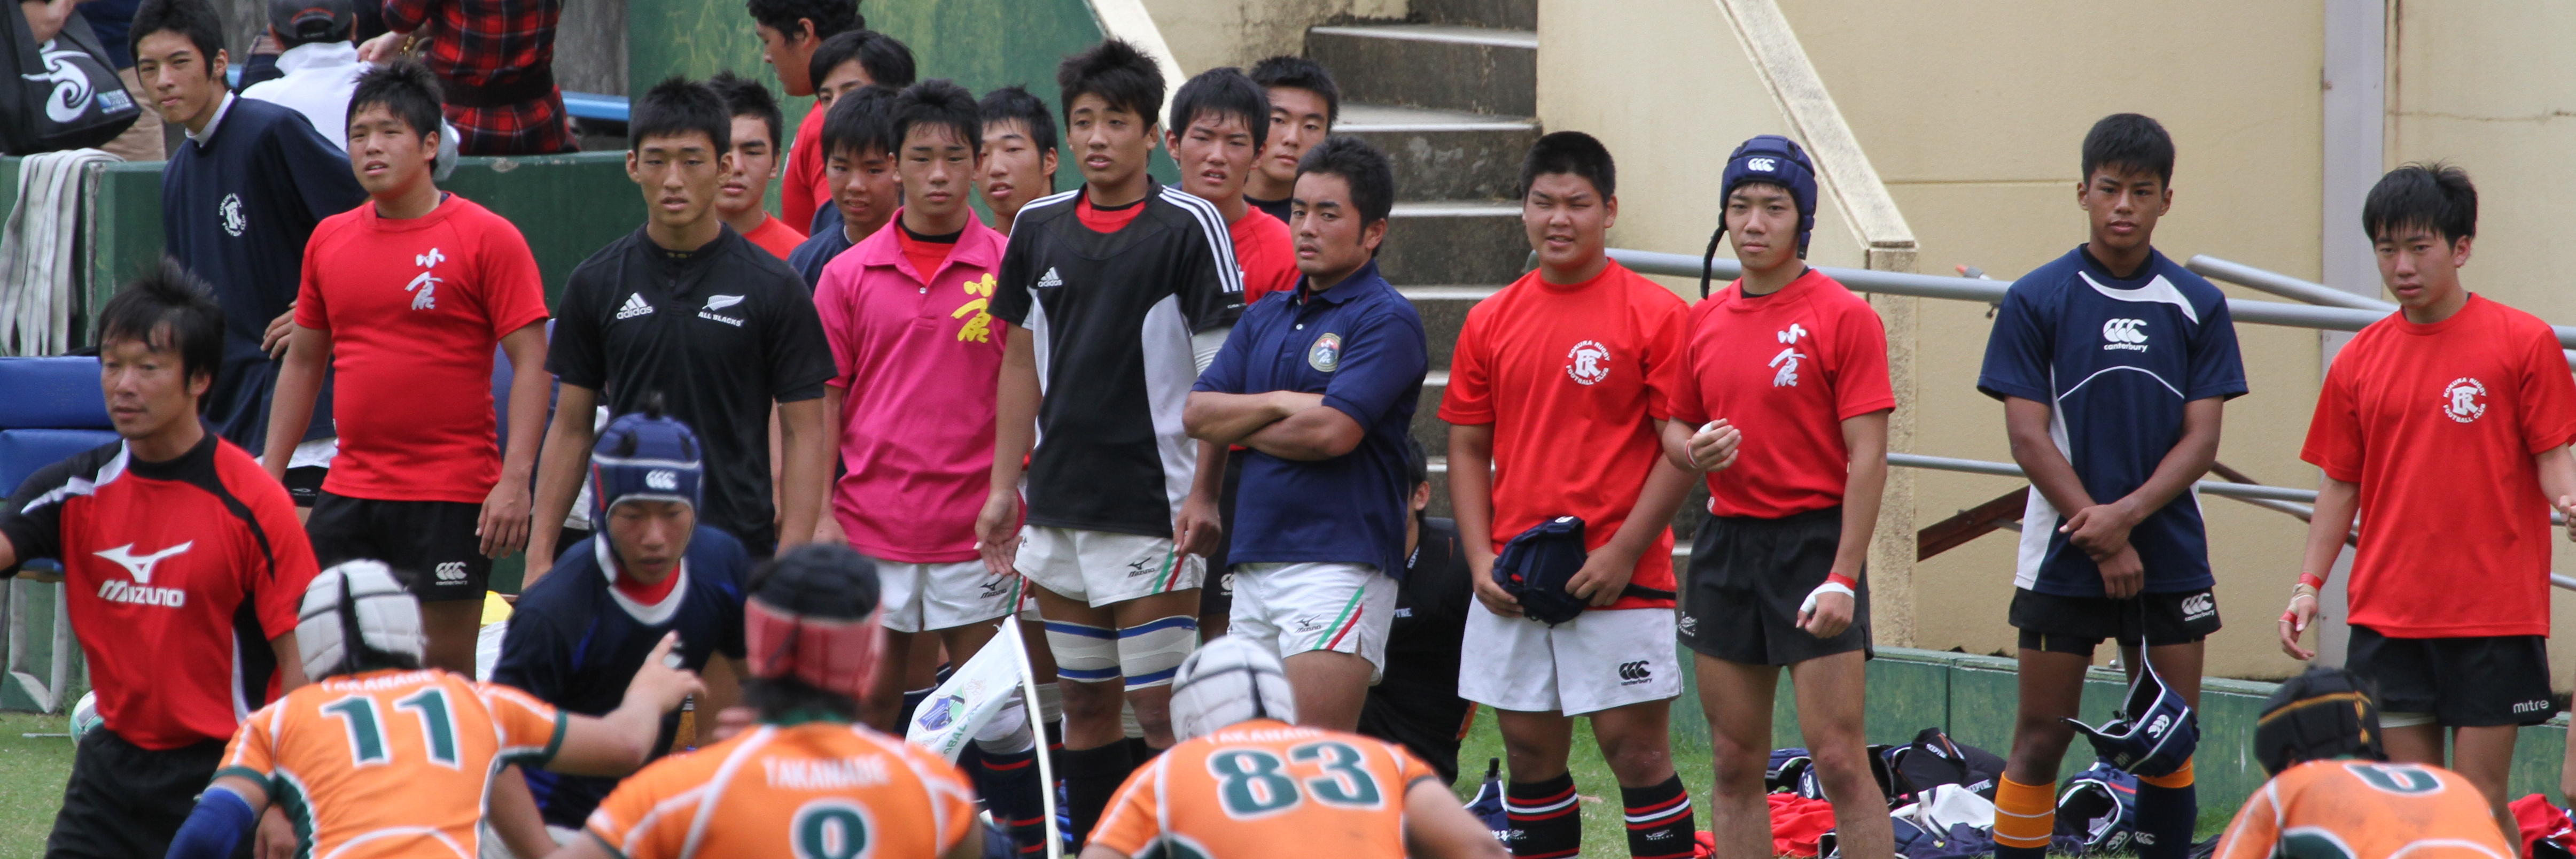 http://kokura-rugby.sakura.ne.jp/2011.9.19-13A.JPG